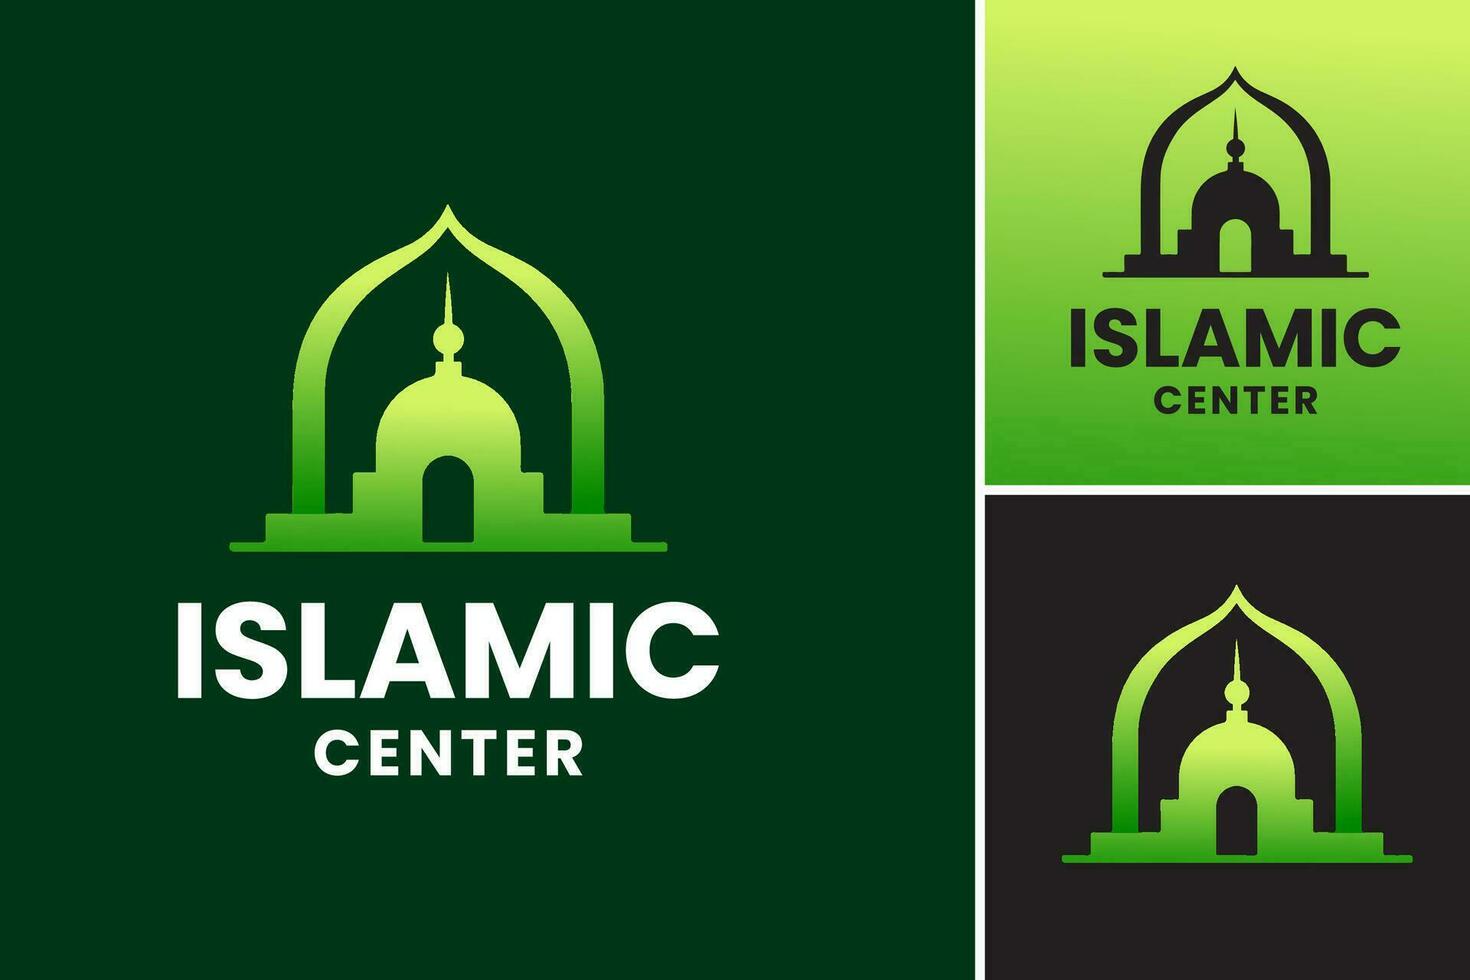 islamique centre logo est une conception atout adapté pour représentant islamique communauté centres, mosquées, ou les organisations en relation à Islam. il pouvez être utilisé pour l'image de marque, signalétique, ou promotionnel matériaux. vecteur